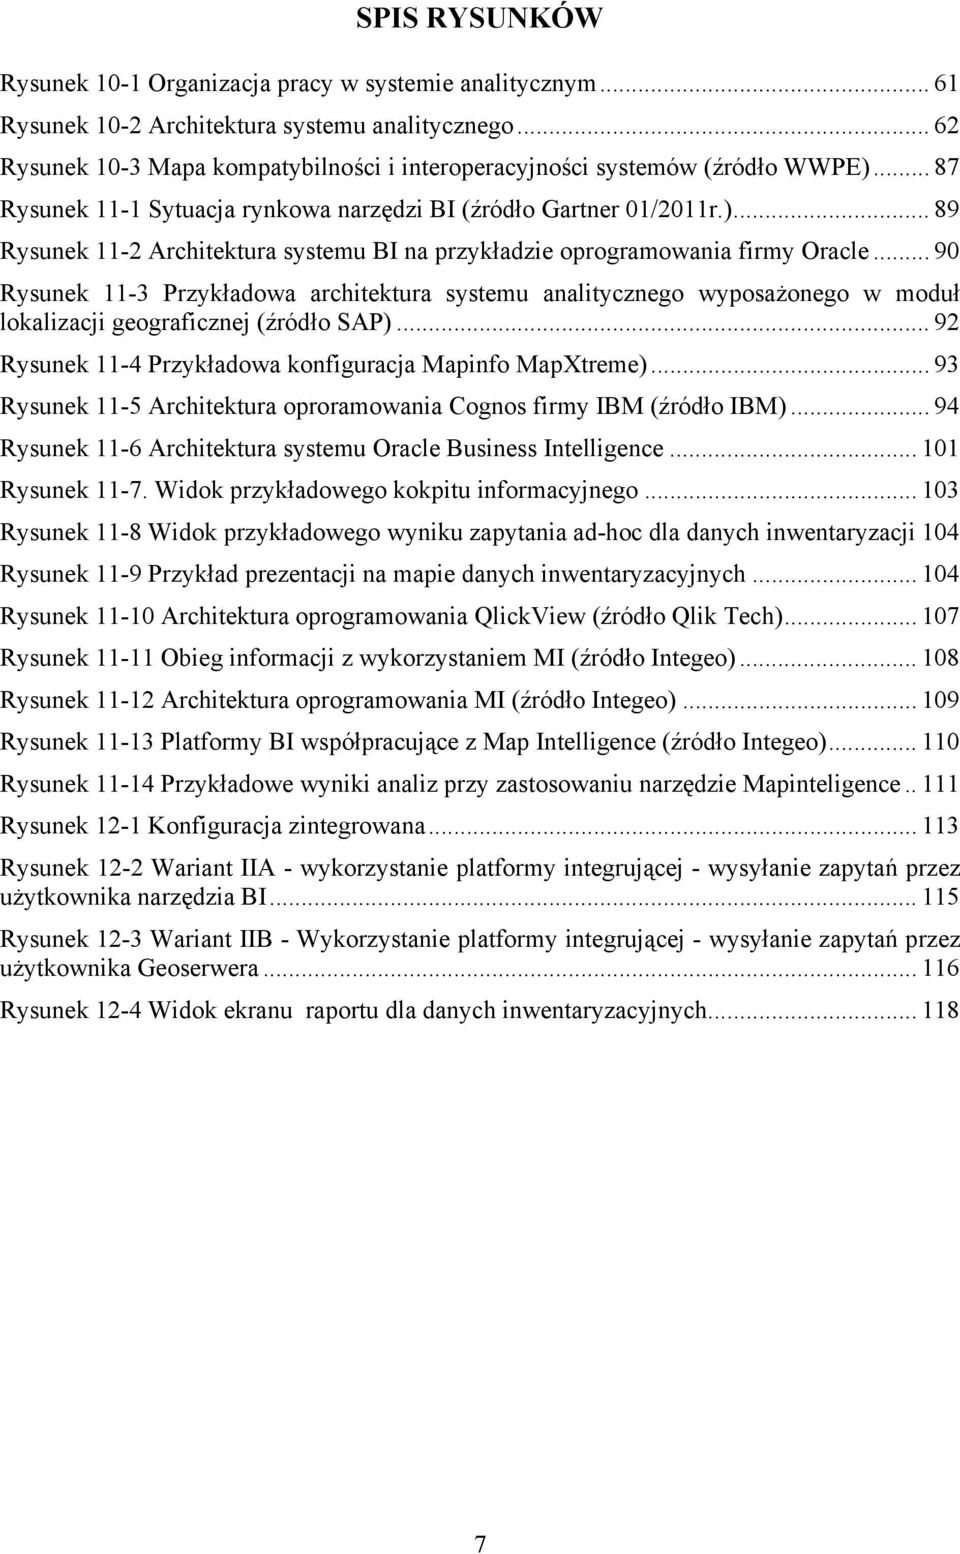 .. 90 Rysunek 11-3 Przykładowa architektura systemu analitycznego wyposażonego w moduł lokalizacji geograficznej (źródło SAP)... 92 Rysunek 11-4 Przykładowa konfiguracja Mapinfo MapXtreme).